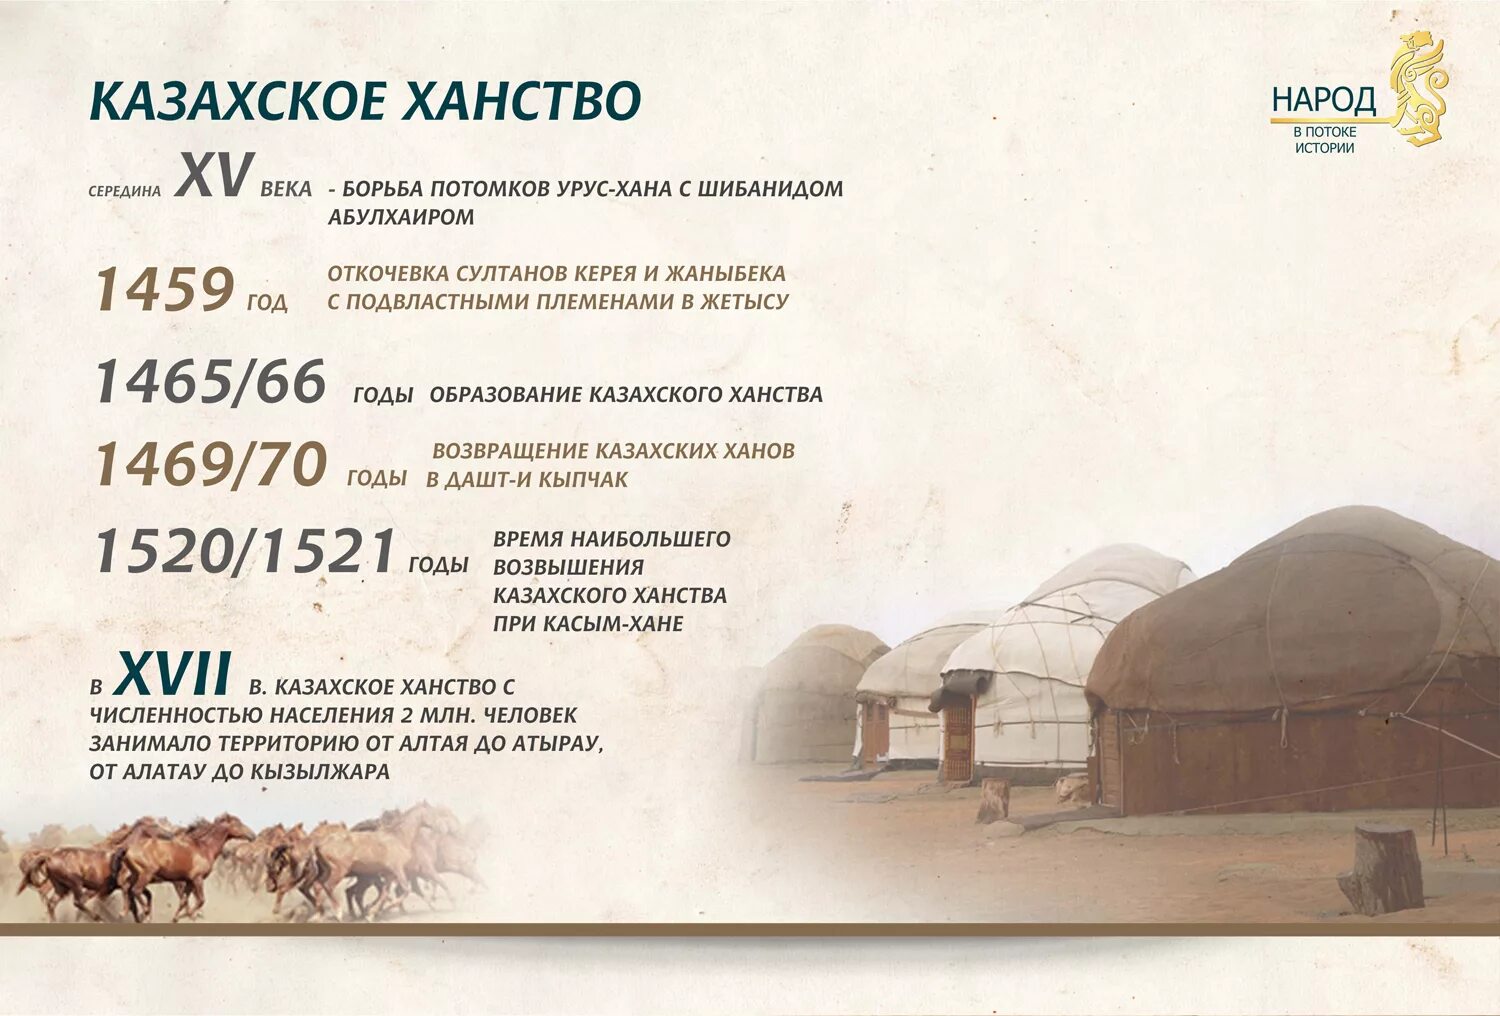 Образование казахского ханства. Год основания казахского ханства. Год образования казахского ханства. Когда образовалалось казахское ханство.